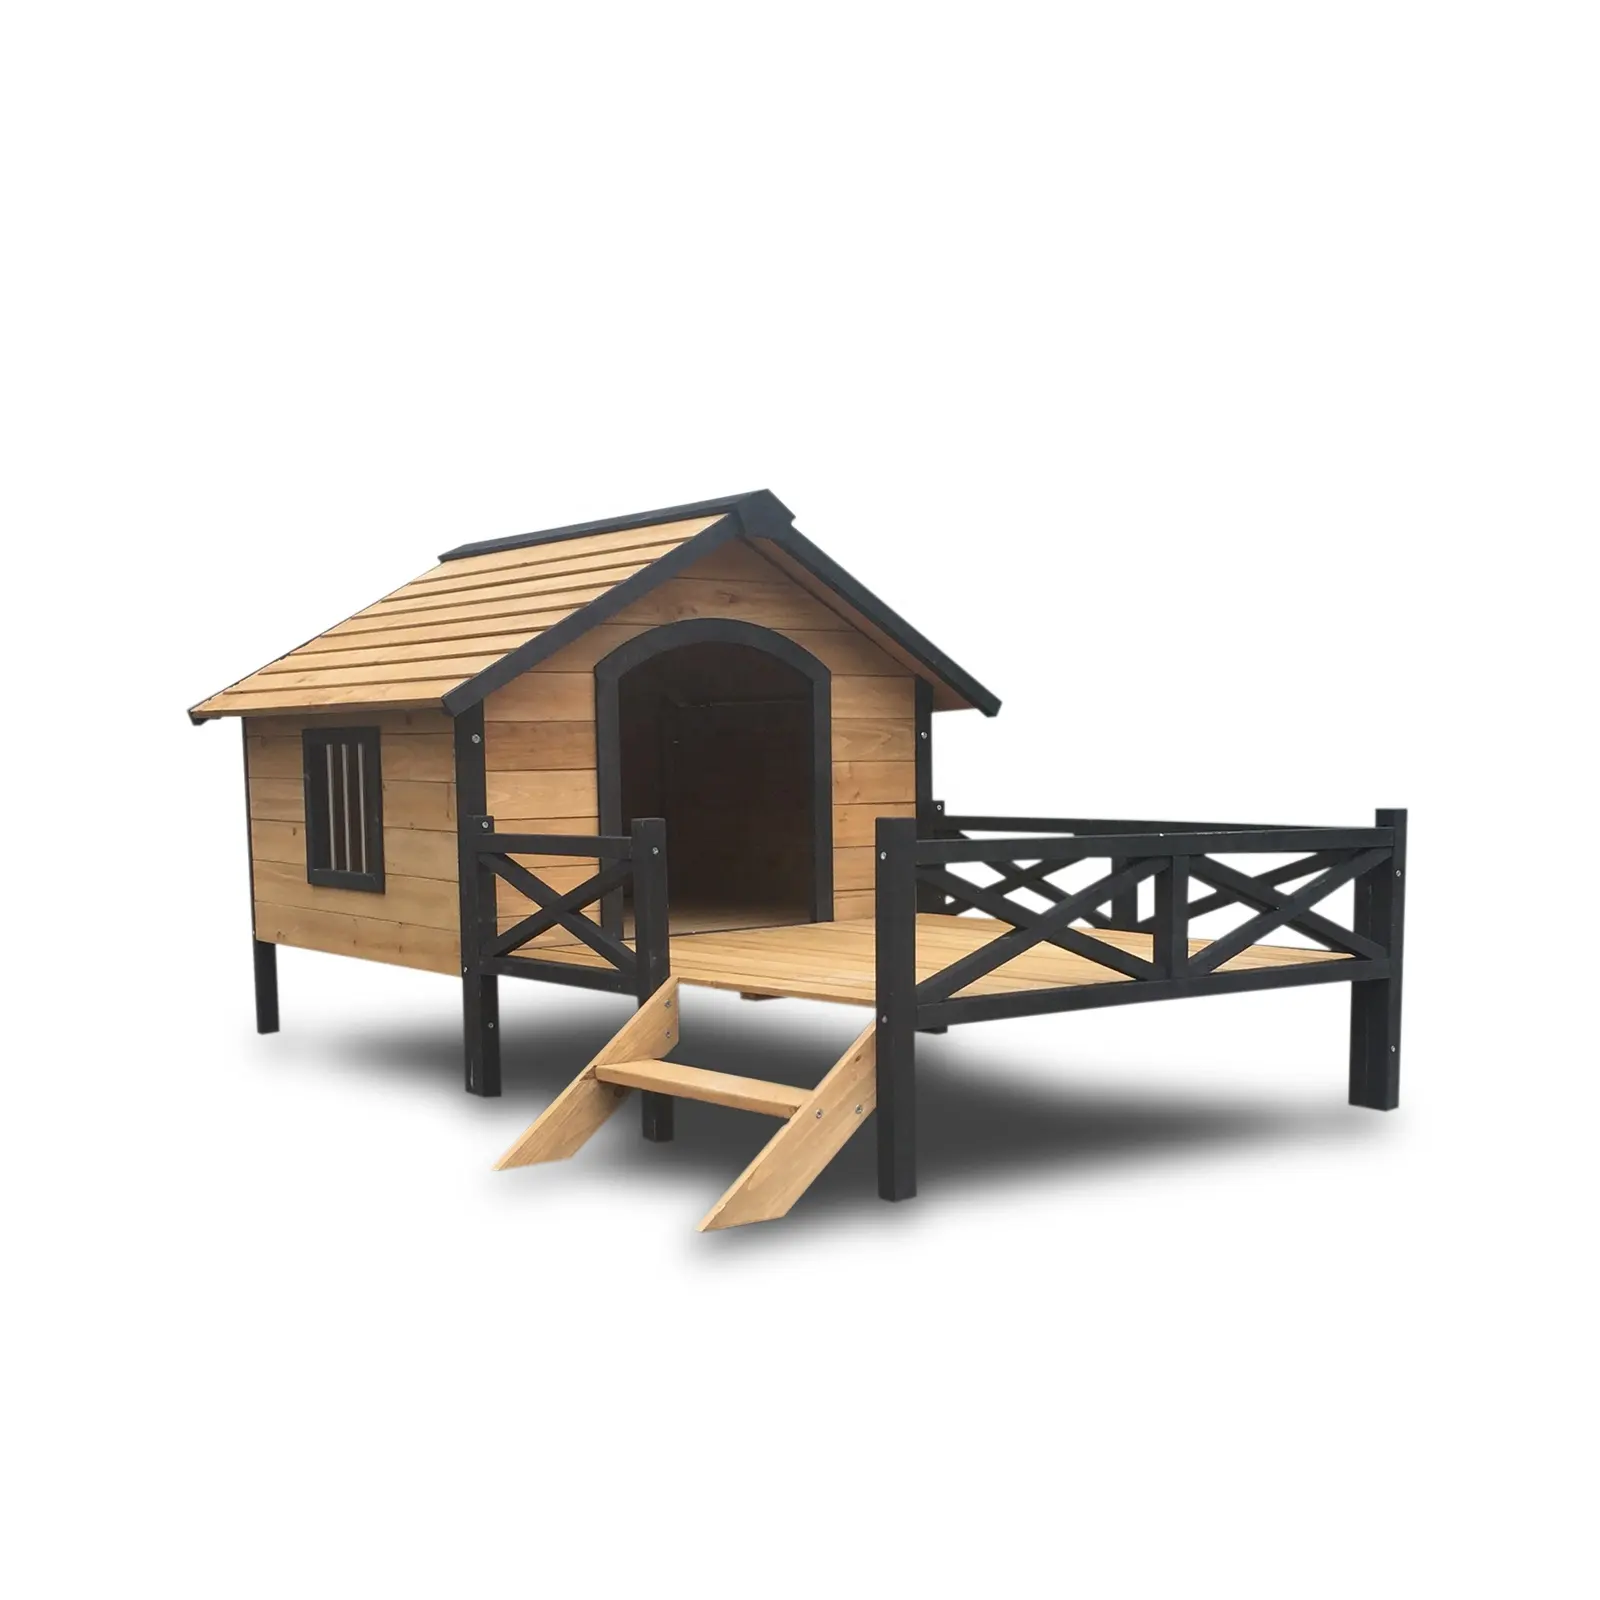 Cage en bois pour animaux domestiques, niche extérieure, matériel respectueux de l'environnement, pour chiens